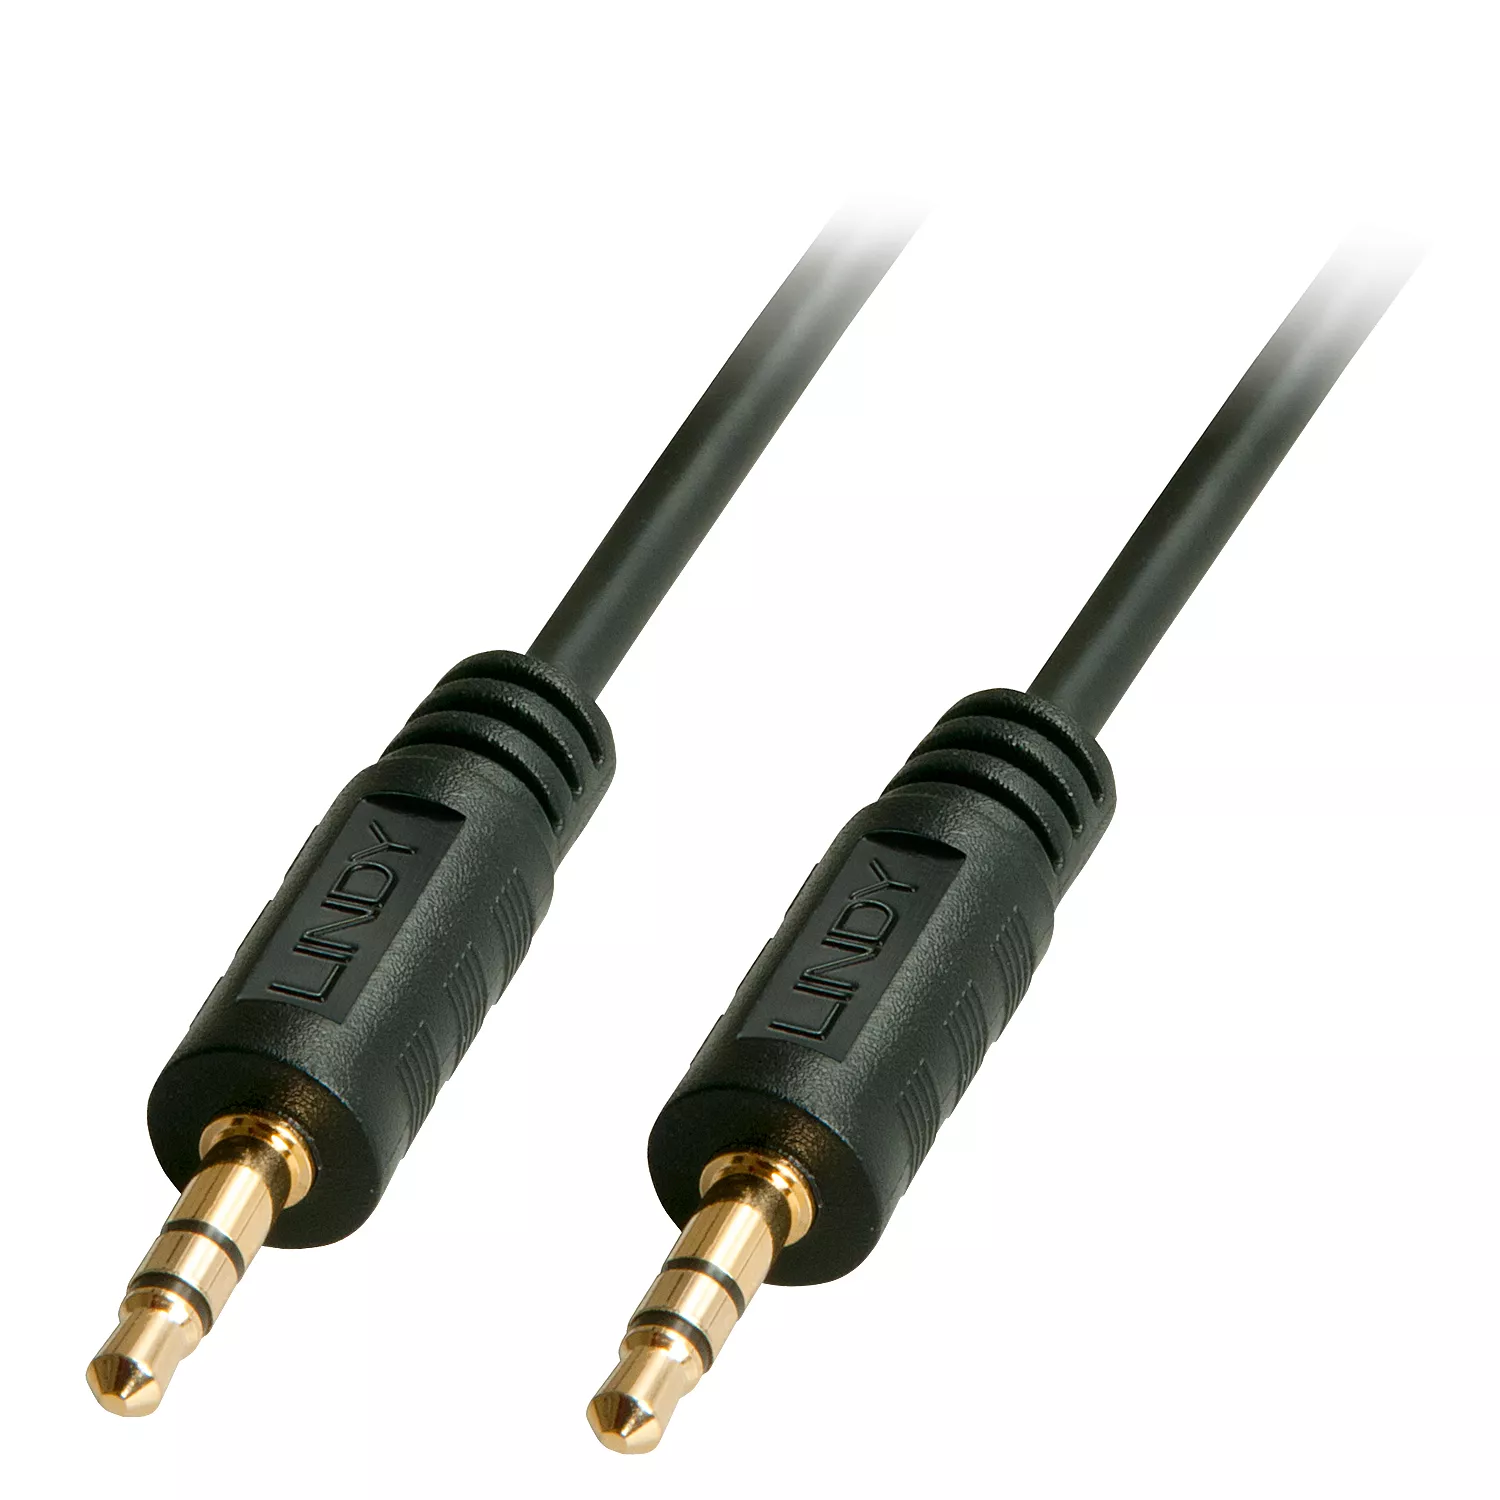 Vente LINDY Premium Audio Cable 1m with 3.5mm Stereo Jack au meilleur prix